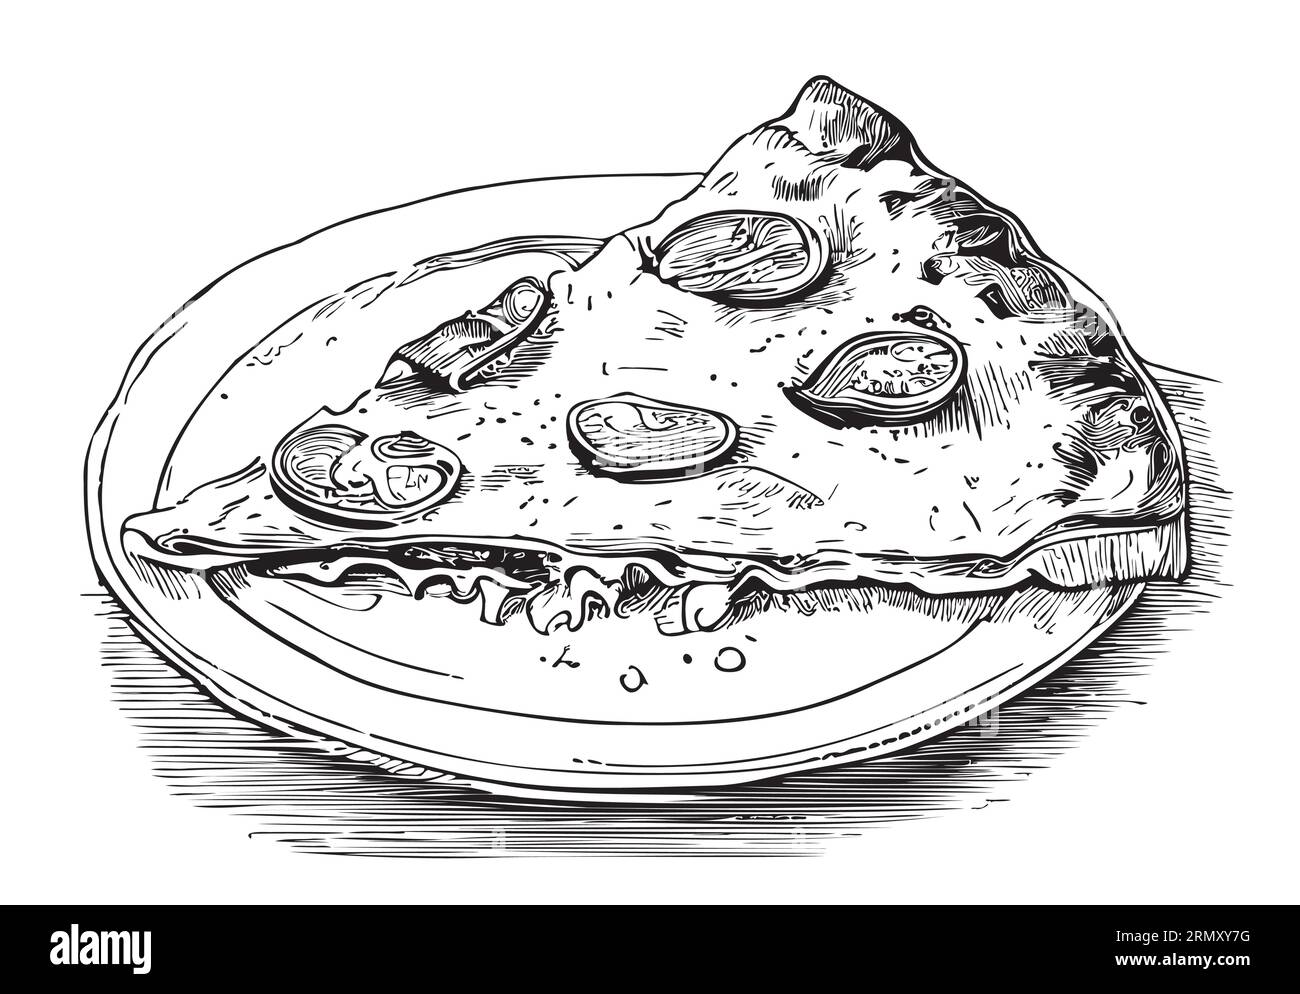 Ein Stück leckere Pizza auf einem Teller Skizze Vektor Illustration Fast Food Stock Vektor